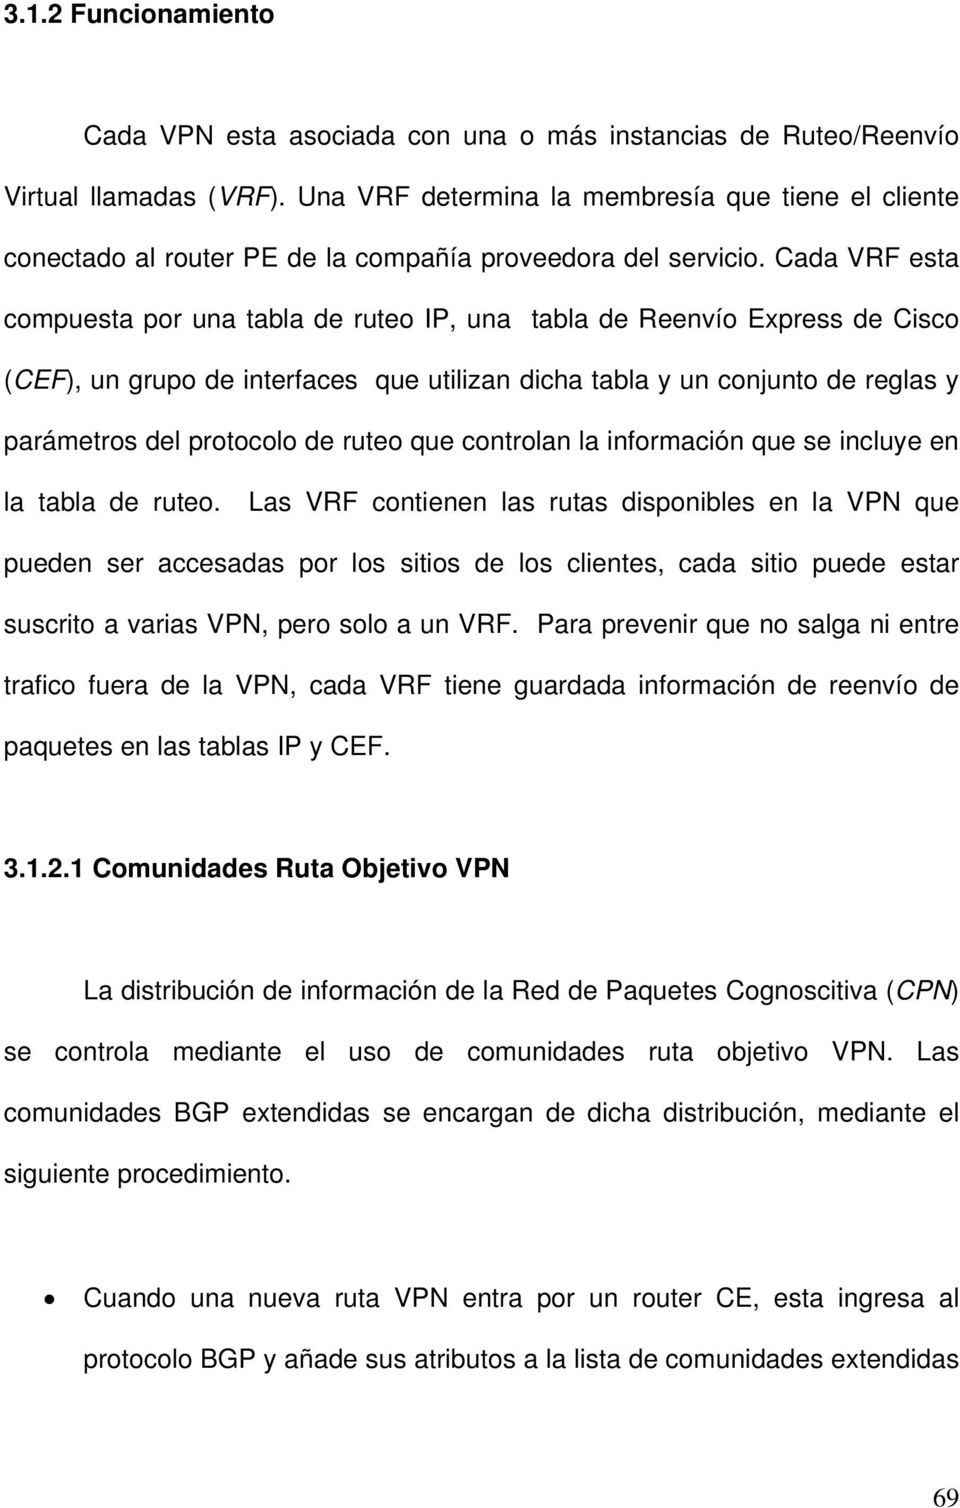 Cada VRF esta compuesta por una tabla de ruteo IP, una tabla de Reenvío Express de Cisco (CEF), un grupo de interfaces que utilizan dicha tabla y un conjunto de reglas y parámetros del protocolo de